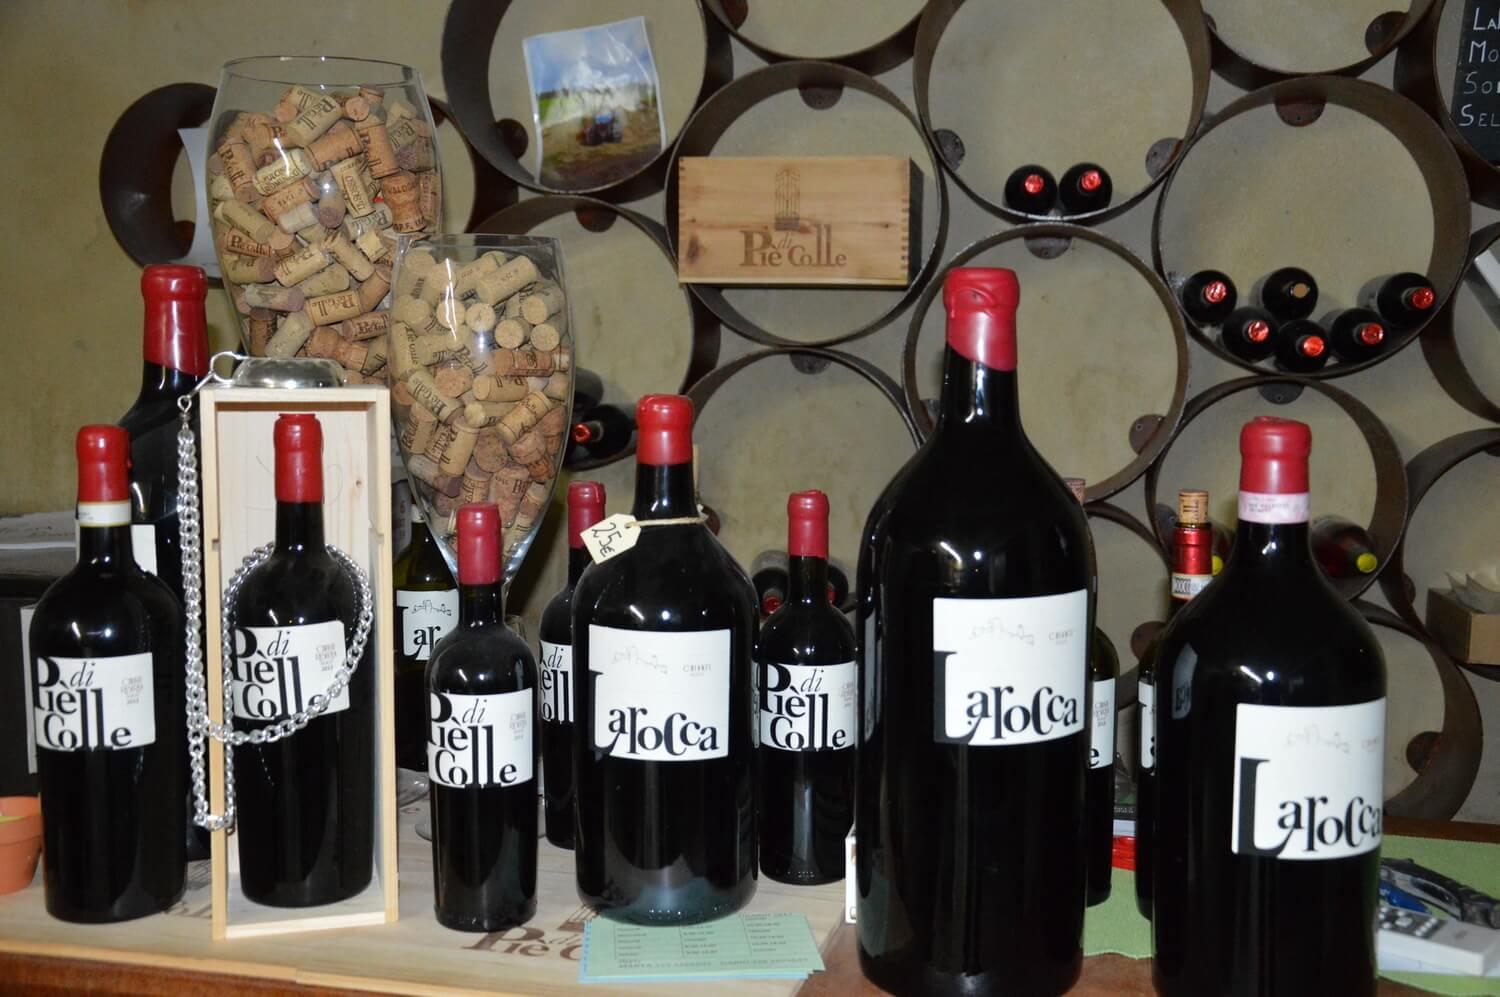 Gallery: immagini su Piè di Colle azienda vinicola toscana 18